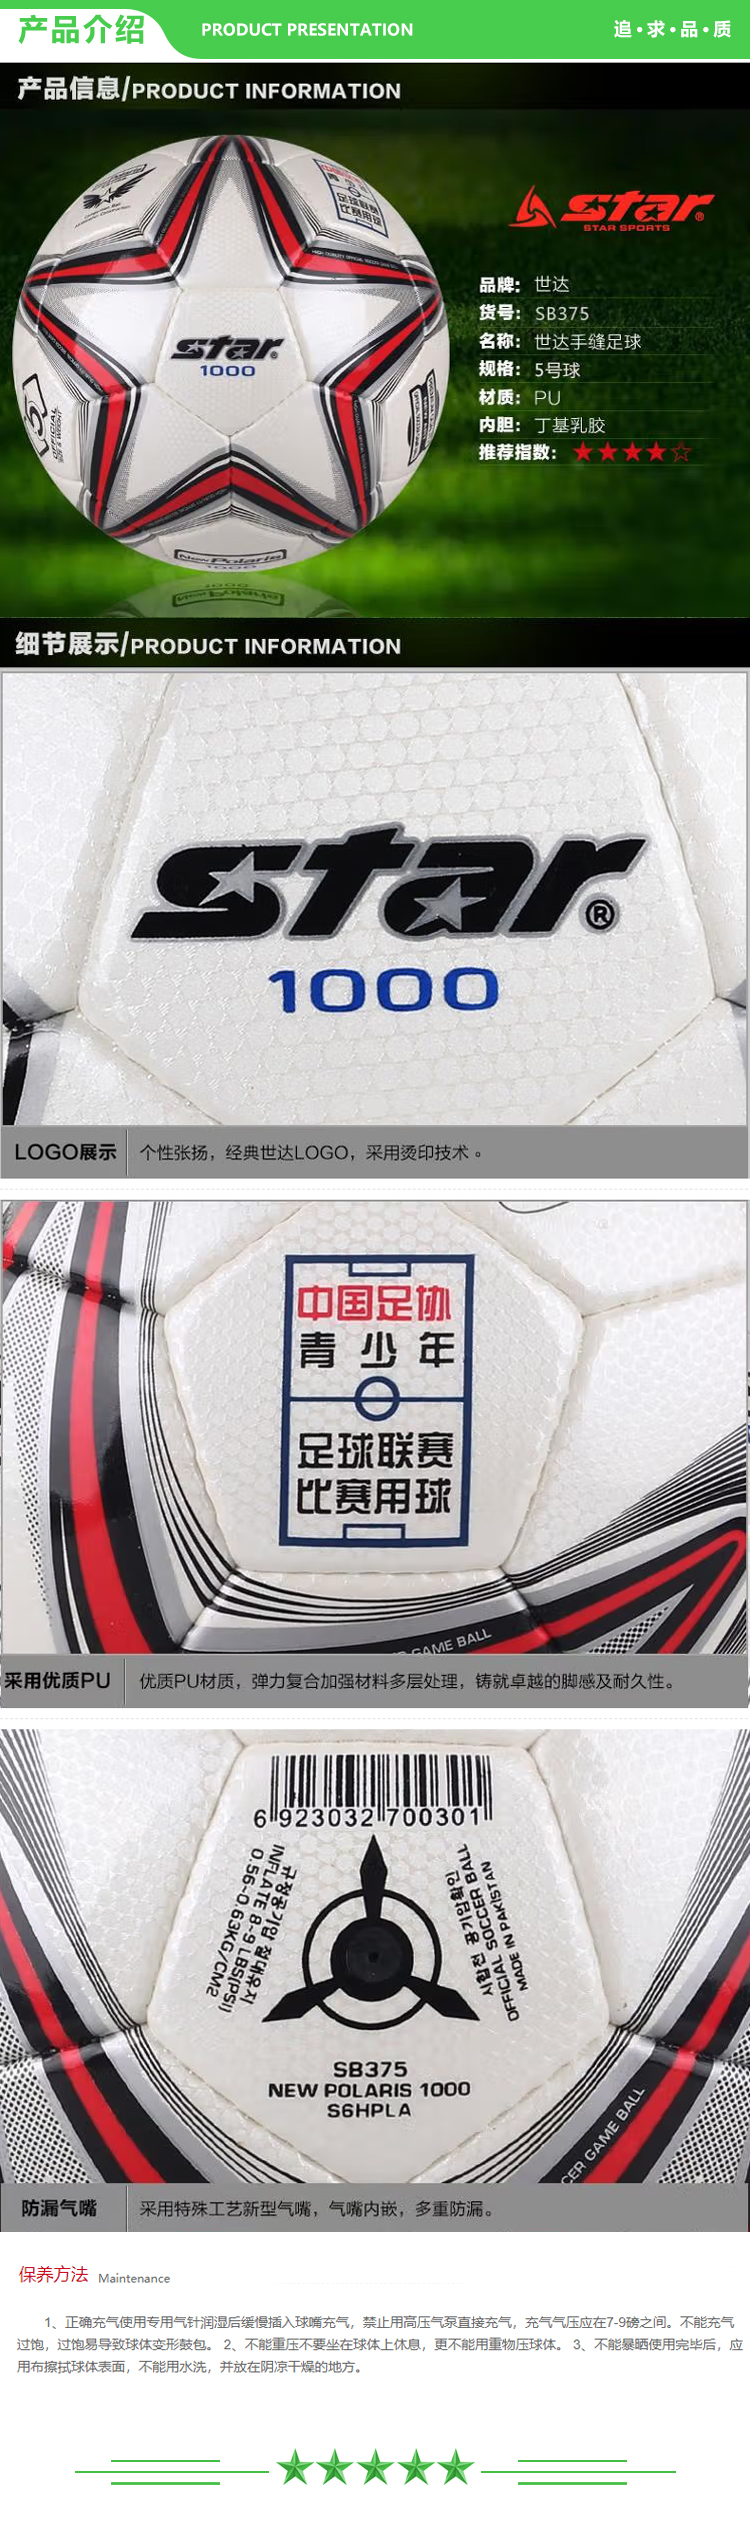 世达 star SB375 超纤革手缝 足球 青少年足球联赛指定用球   2.jpg